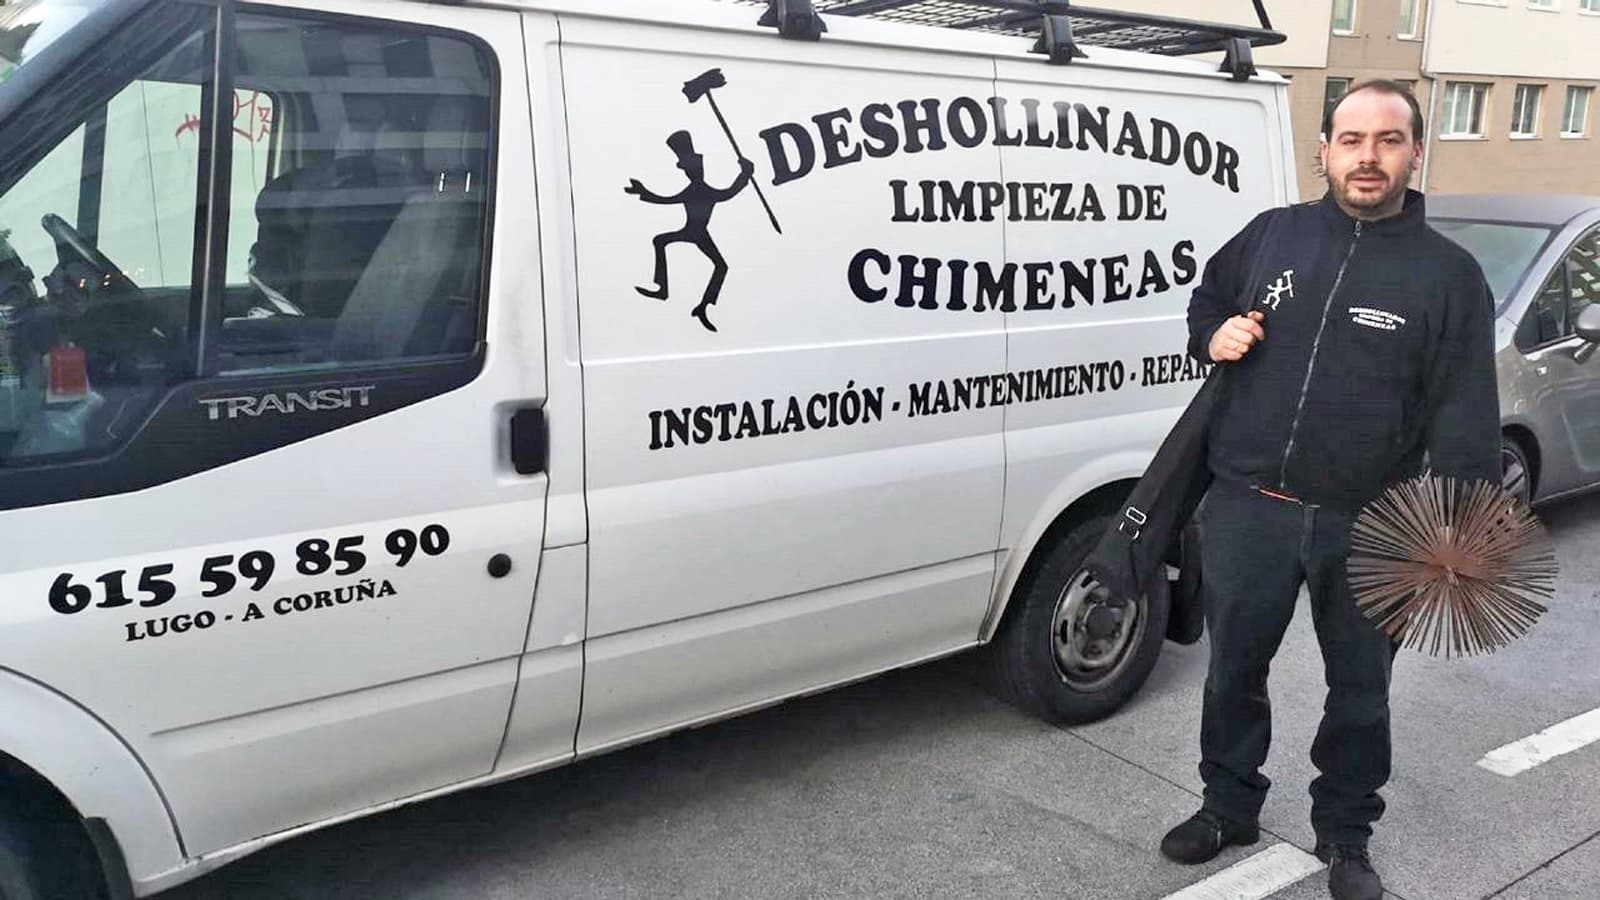 Mantenimiento y limpieza de chimeneas en Lugo y A Coruña